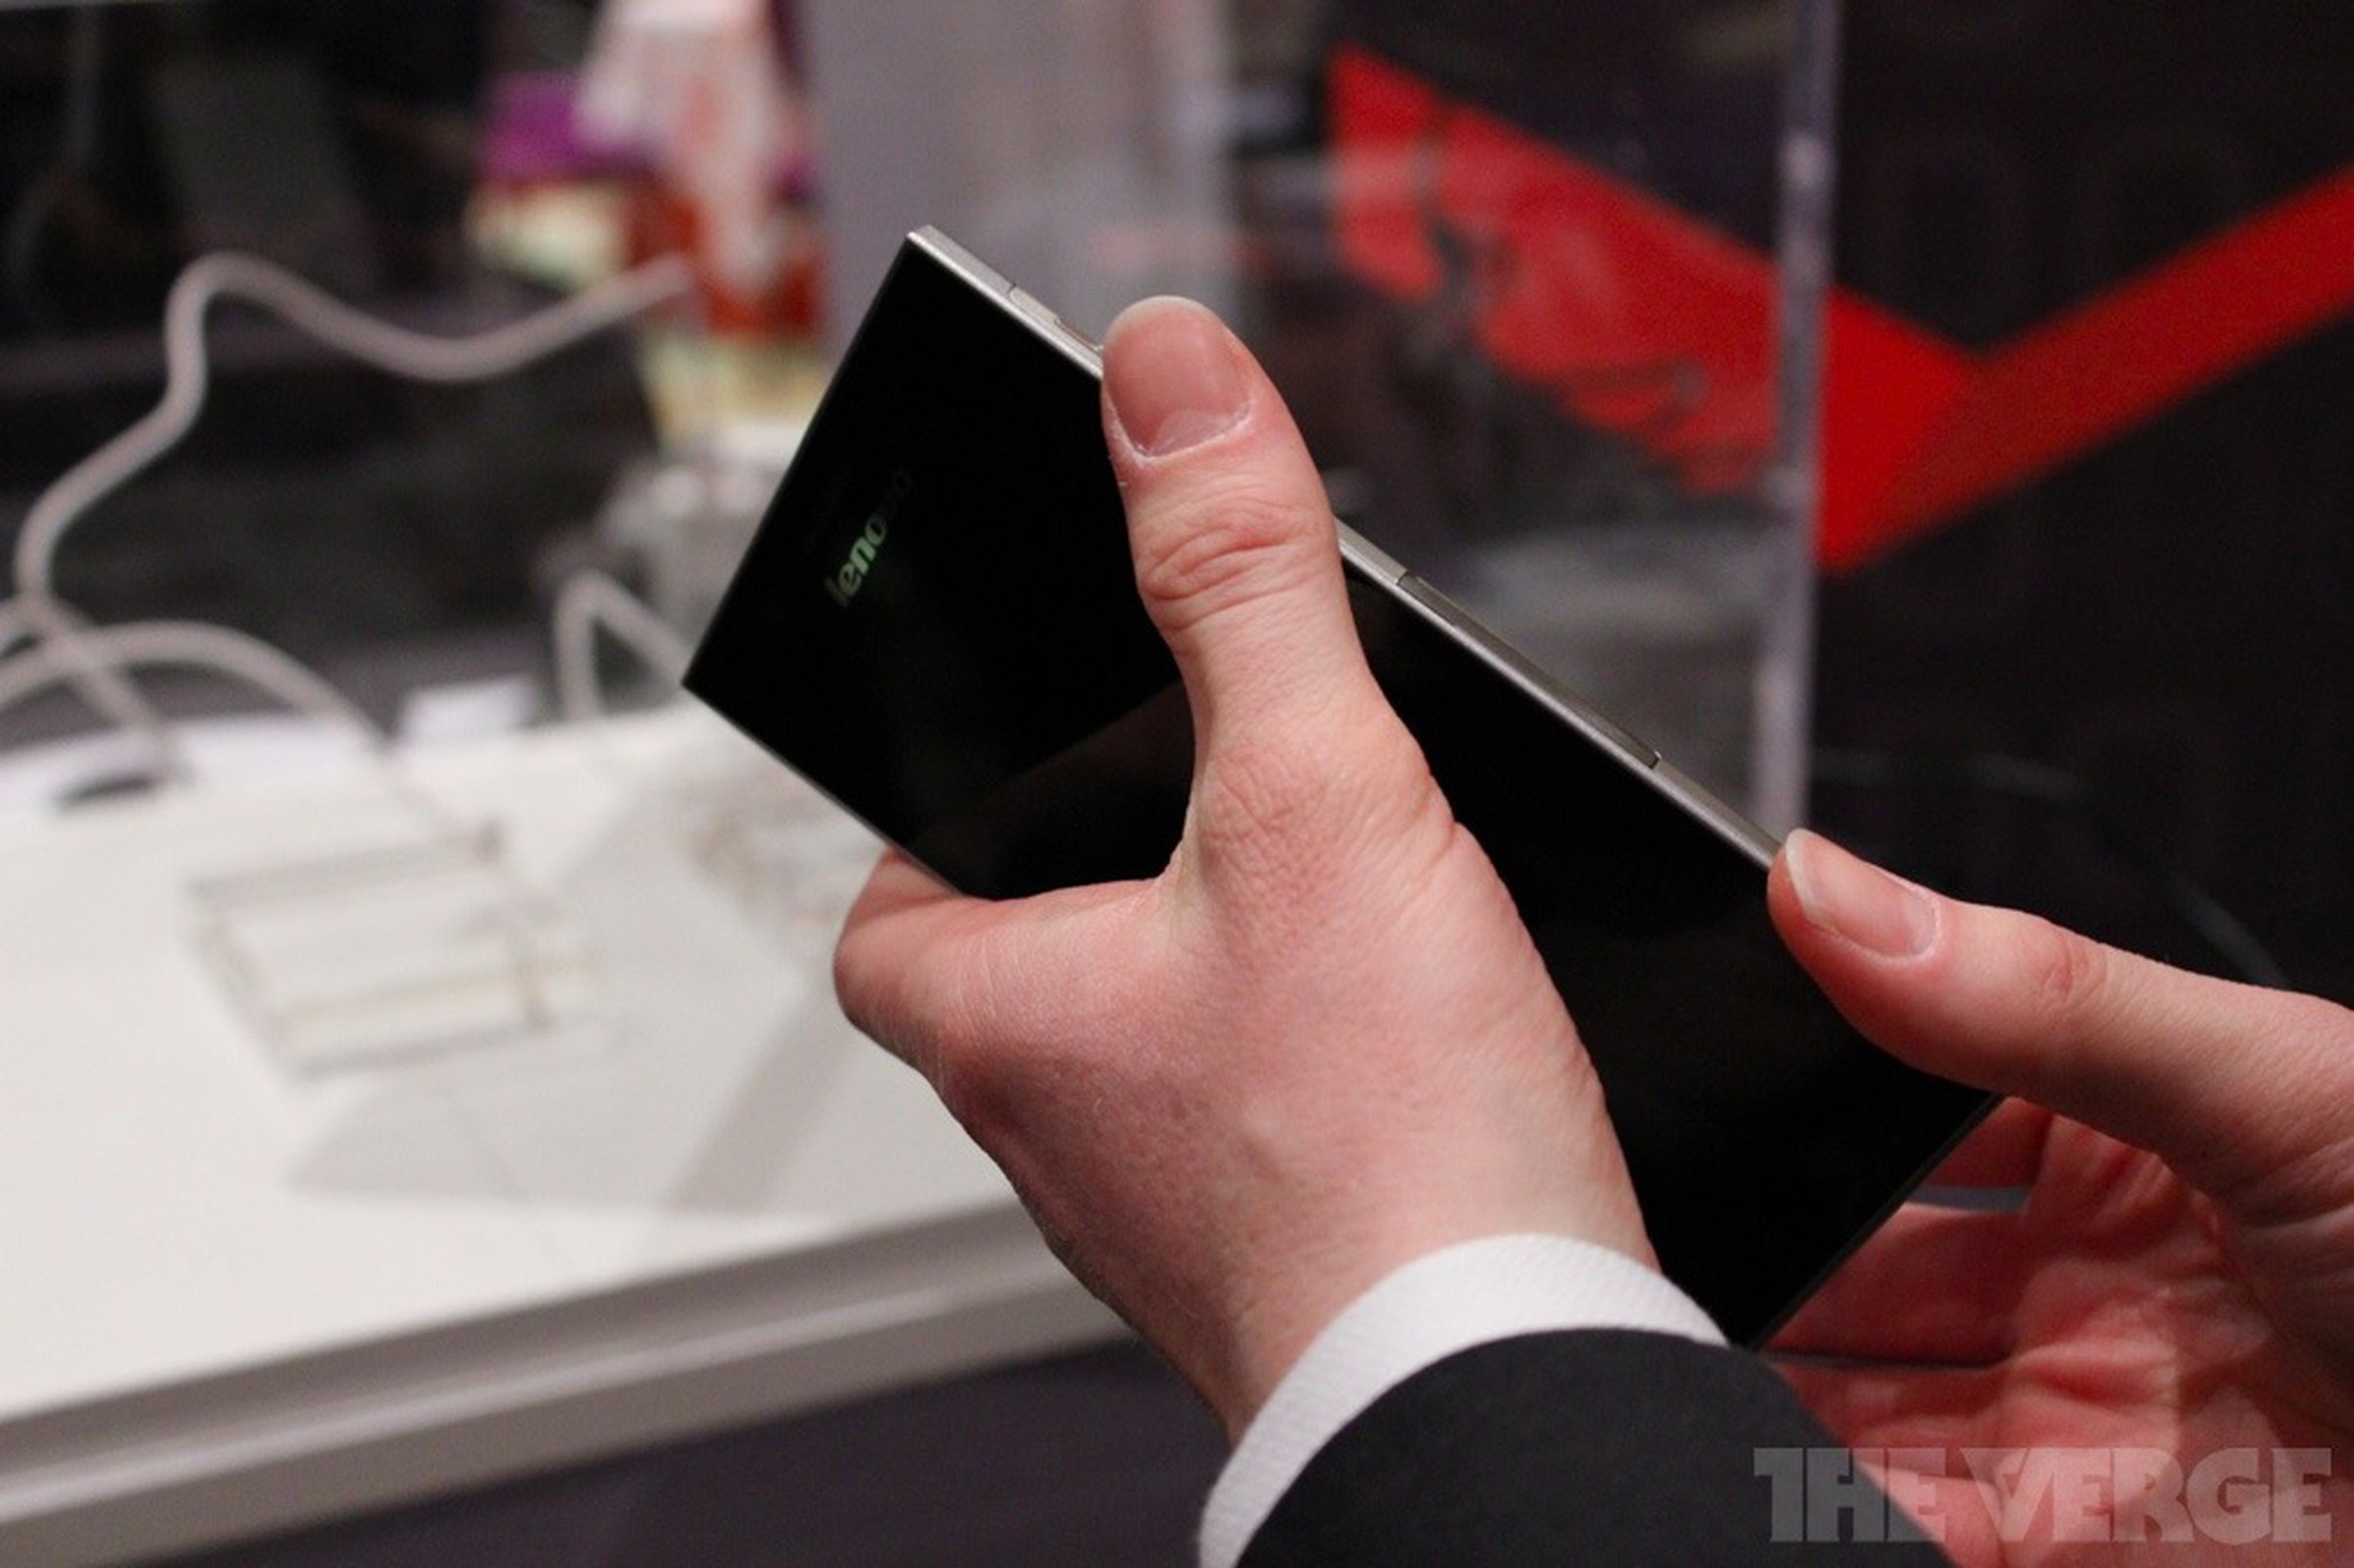 Lenovo 5.5-inch IdeaPhone K900 hands-on photos